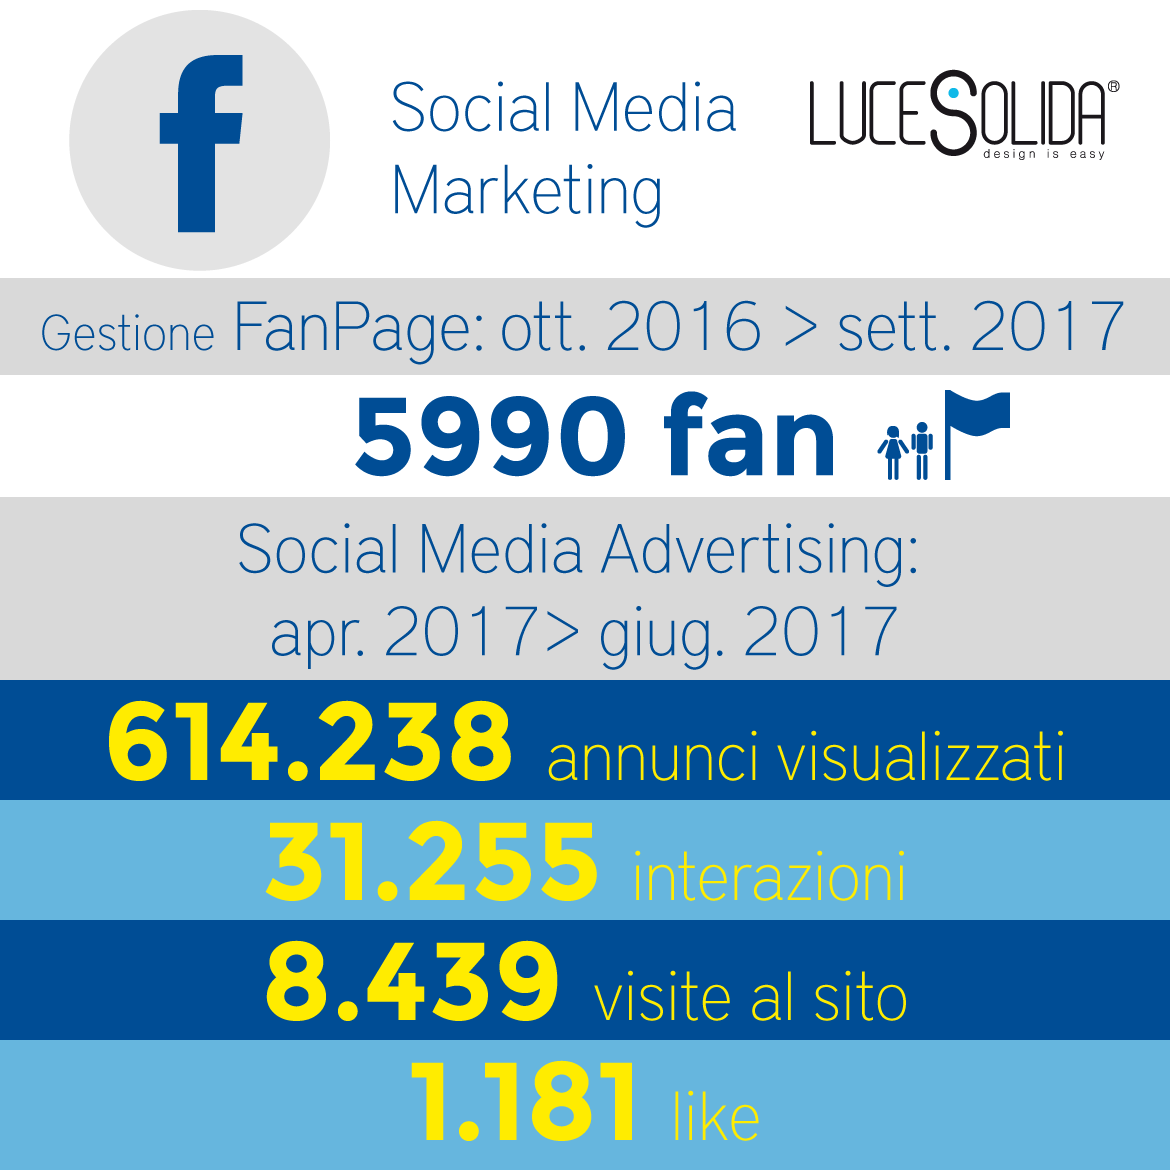 Social media marketing – Lucesolida